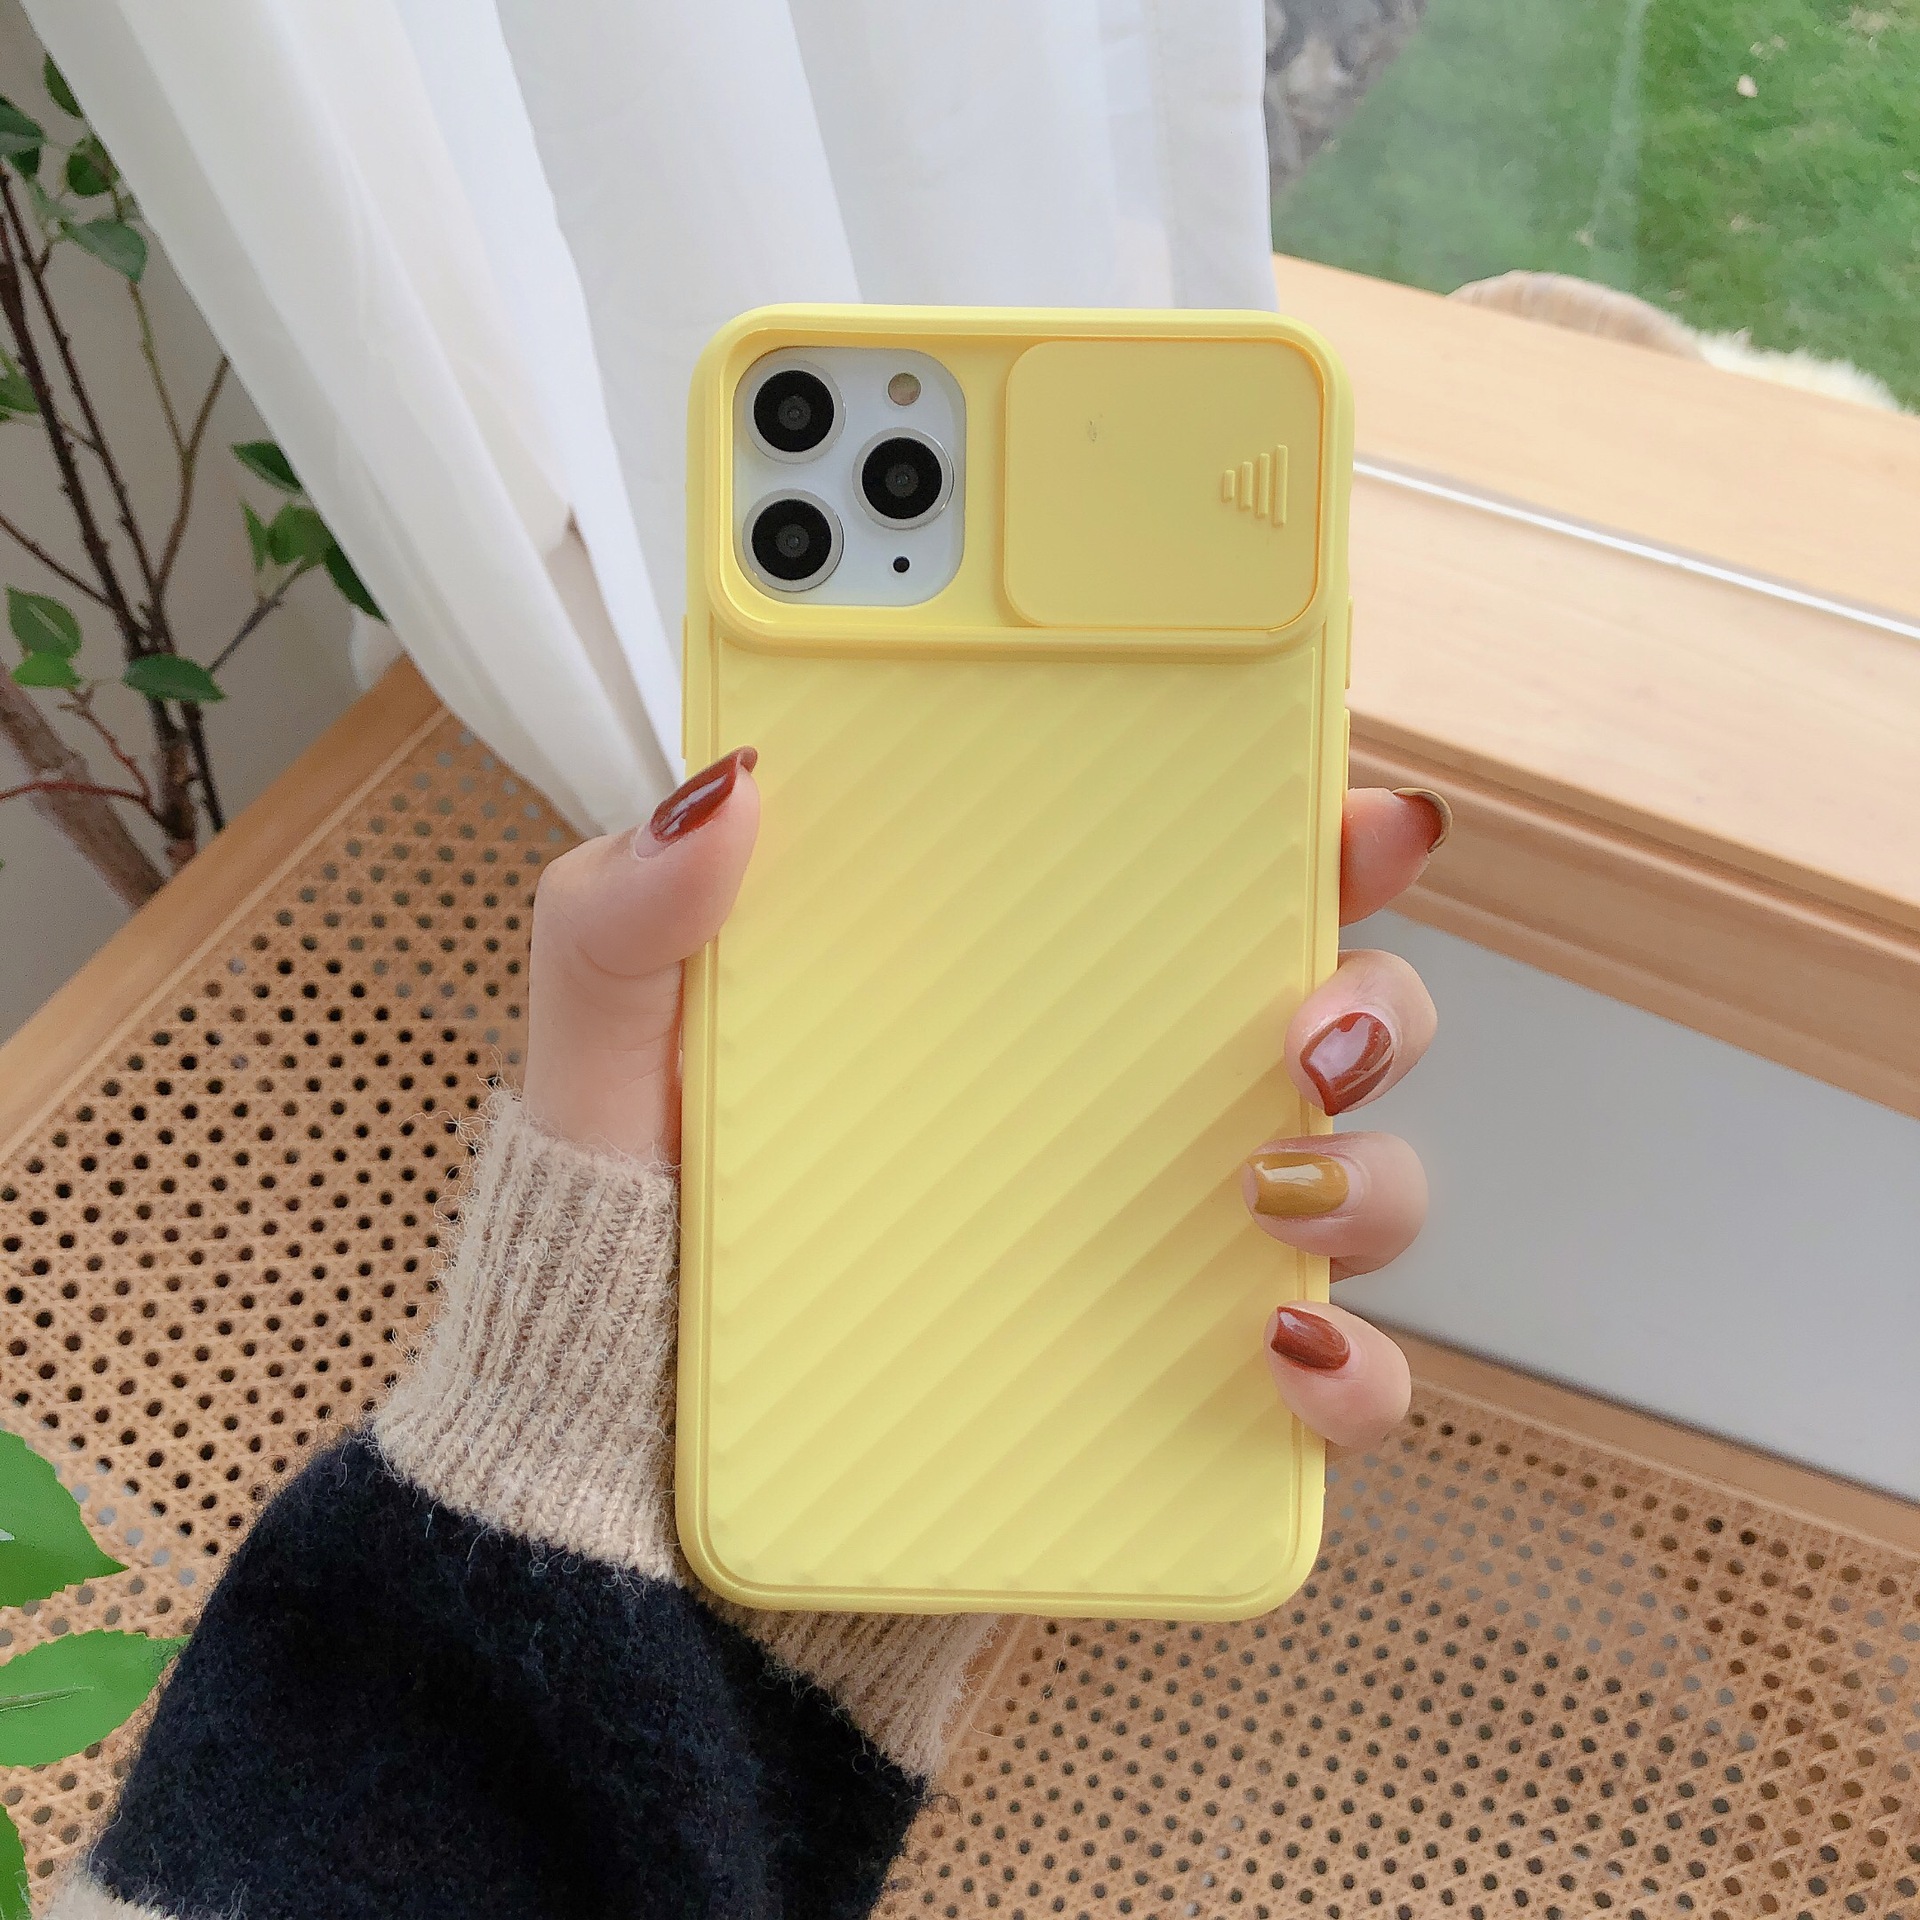 117073 เคส iPhone 11 Pro Max สีเหลือง
